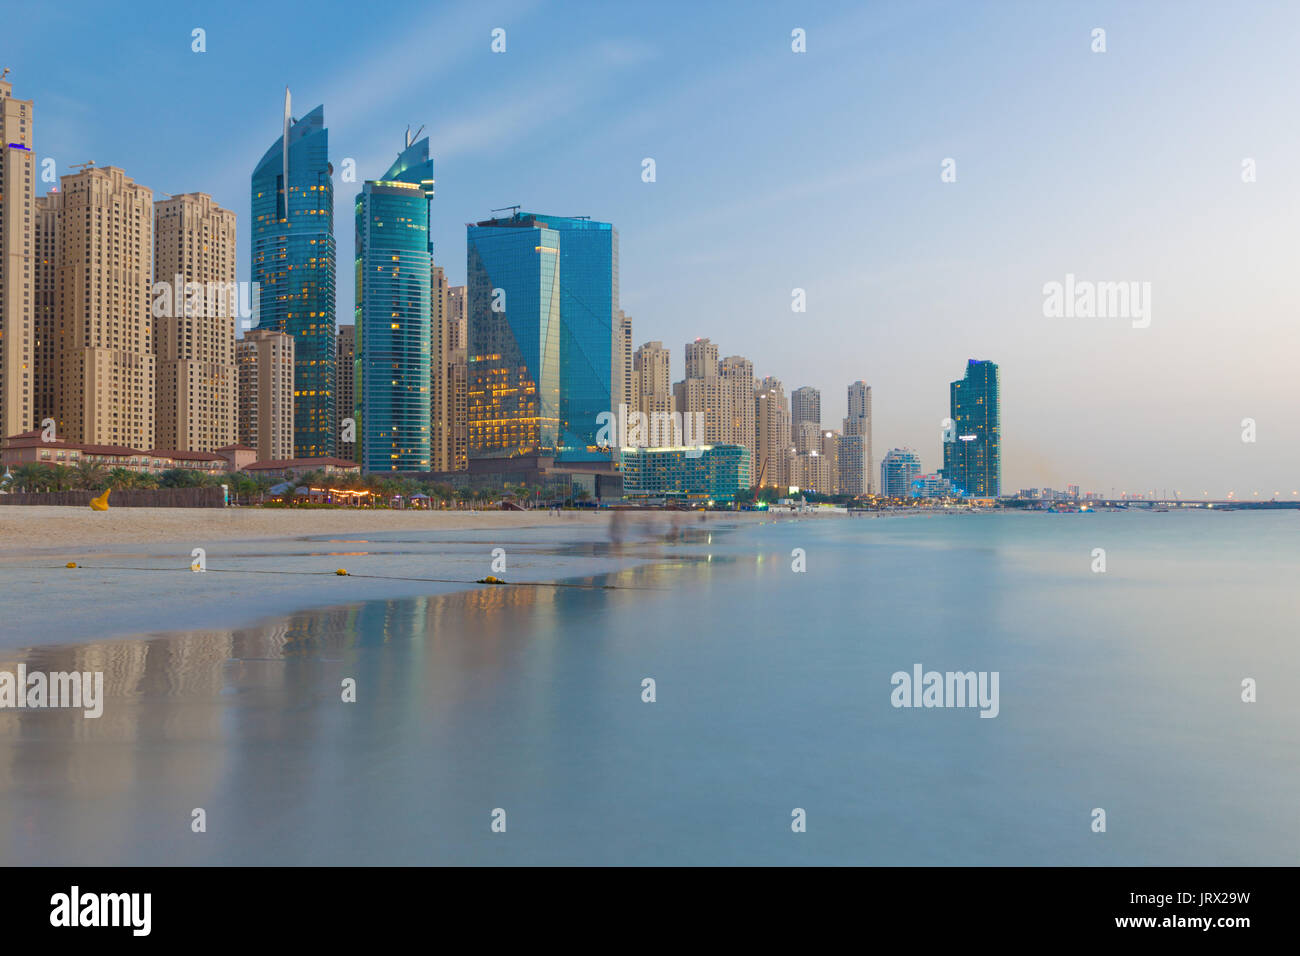 Dubai - La skyline serale di Marina alberghi da spiaggia. Foto Stock